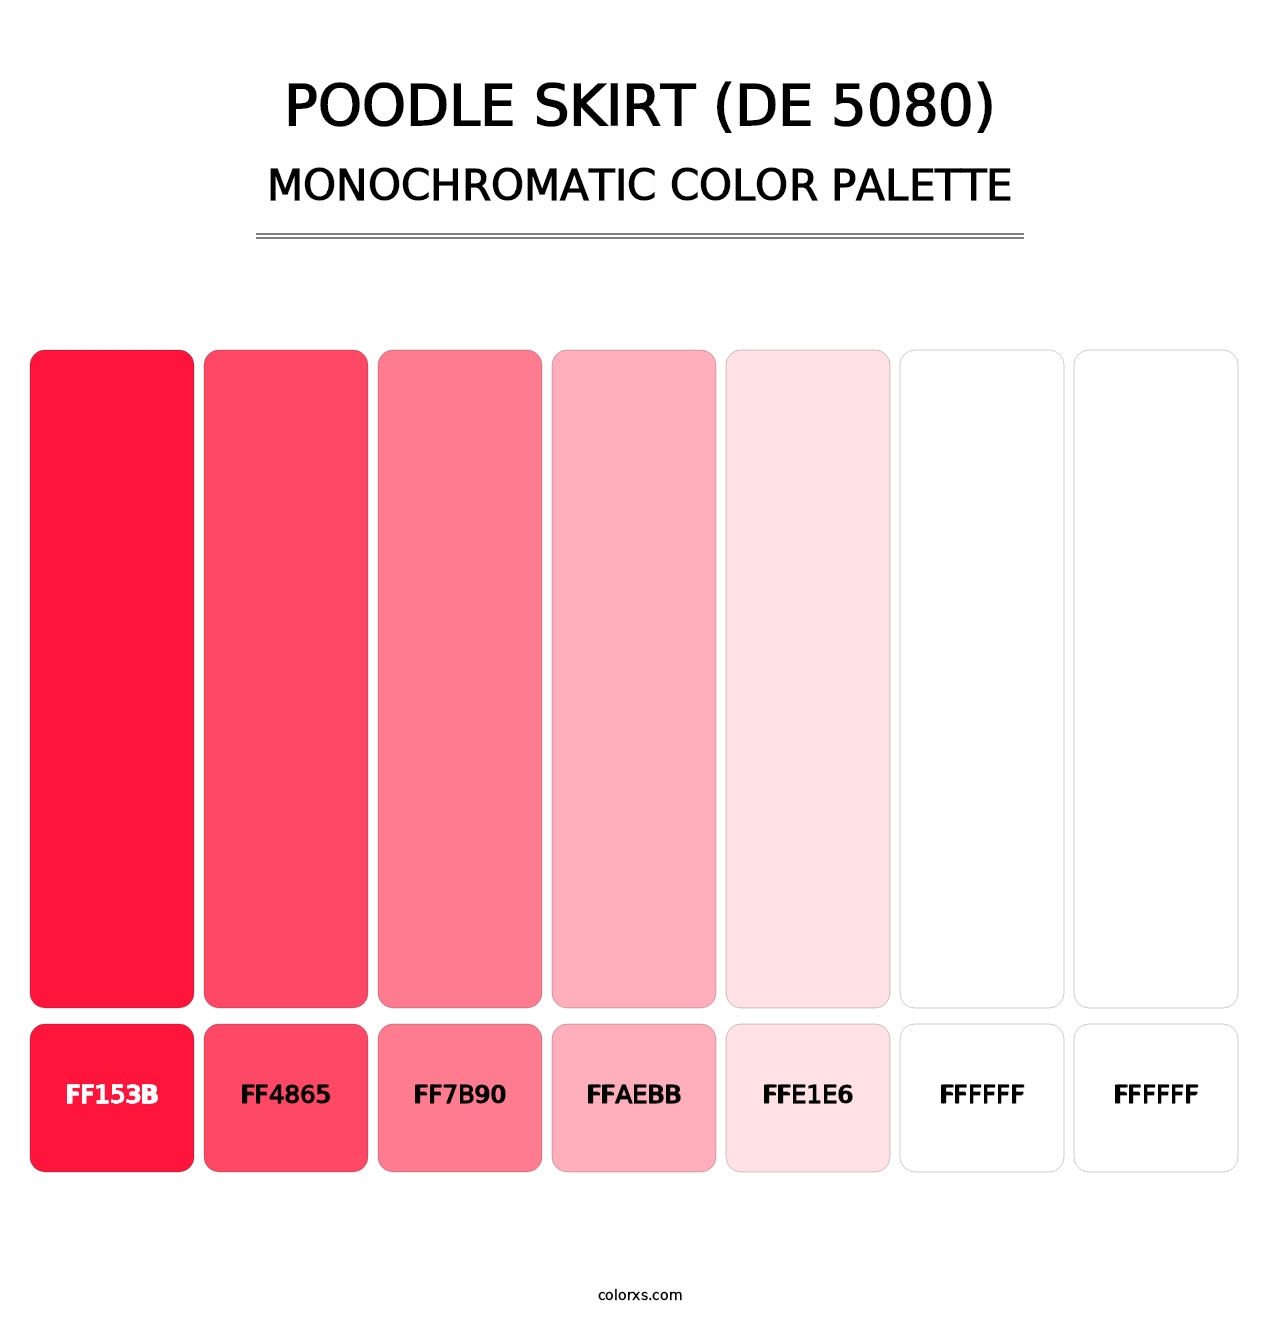 Poodle Skirt (DE 5080) - Monochromatic Color Palette